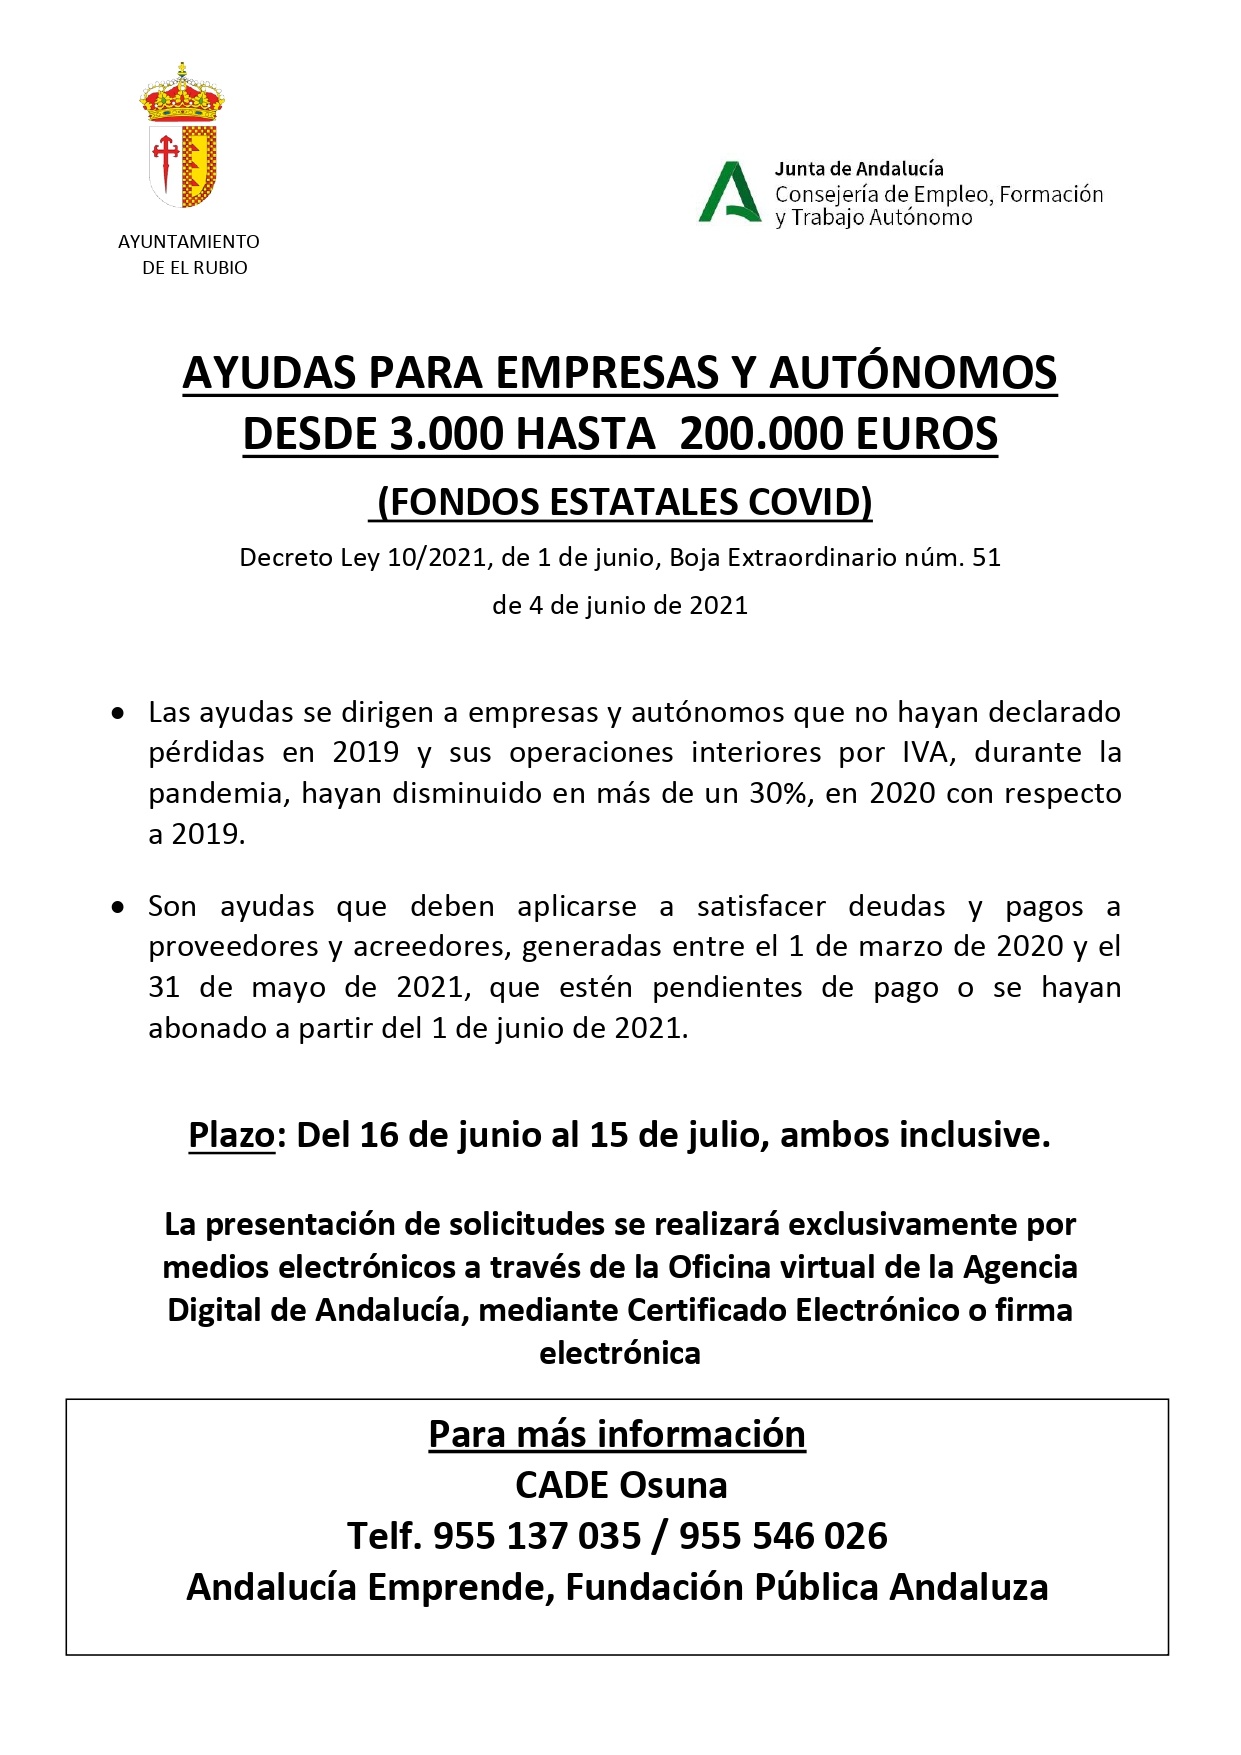 CARTEL AYUDAS EMPRESAS Y AUTONOMOS COVID_page-0001